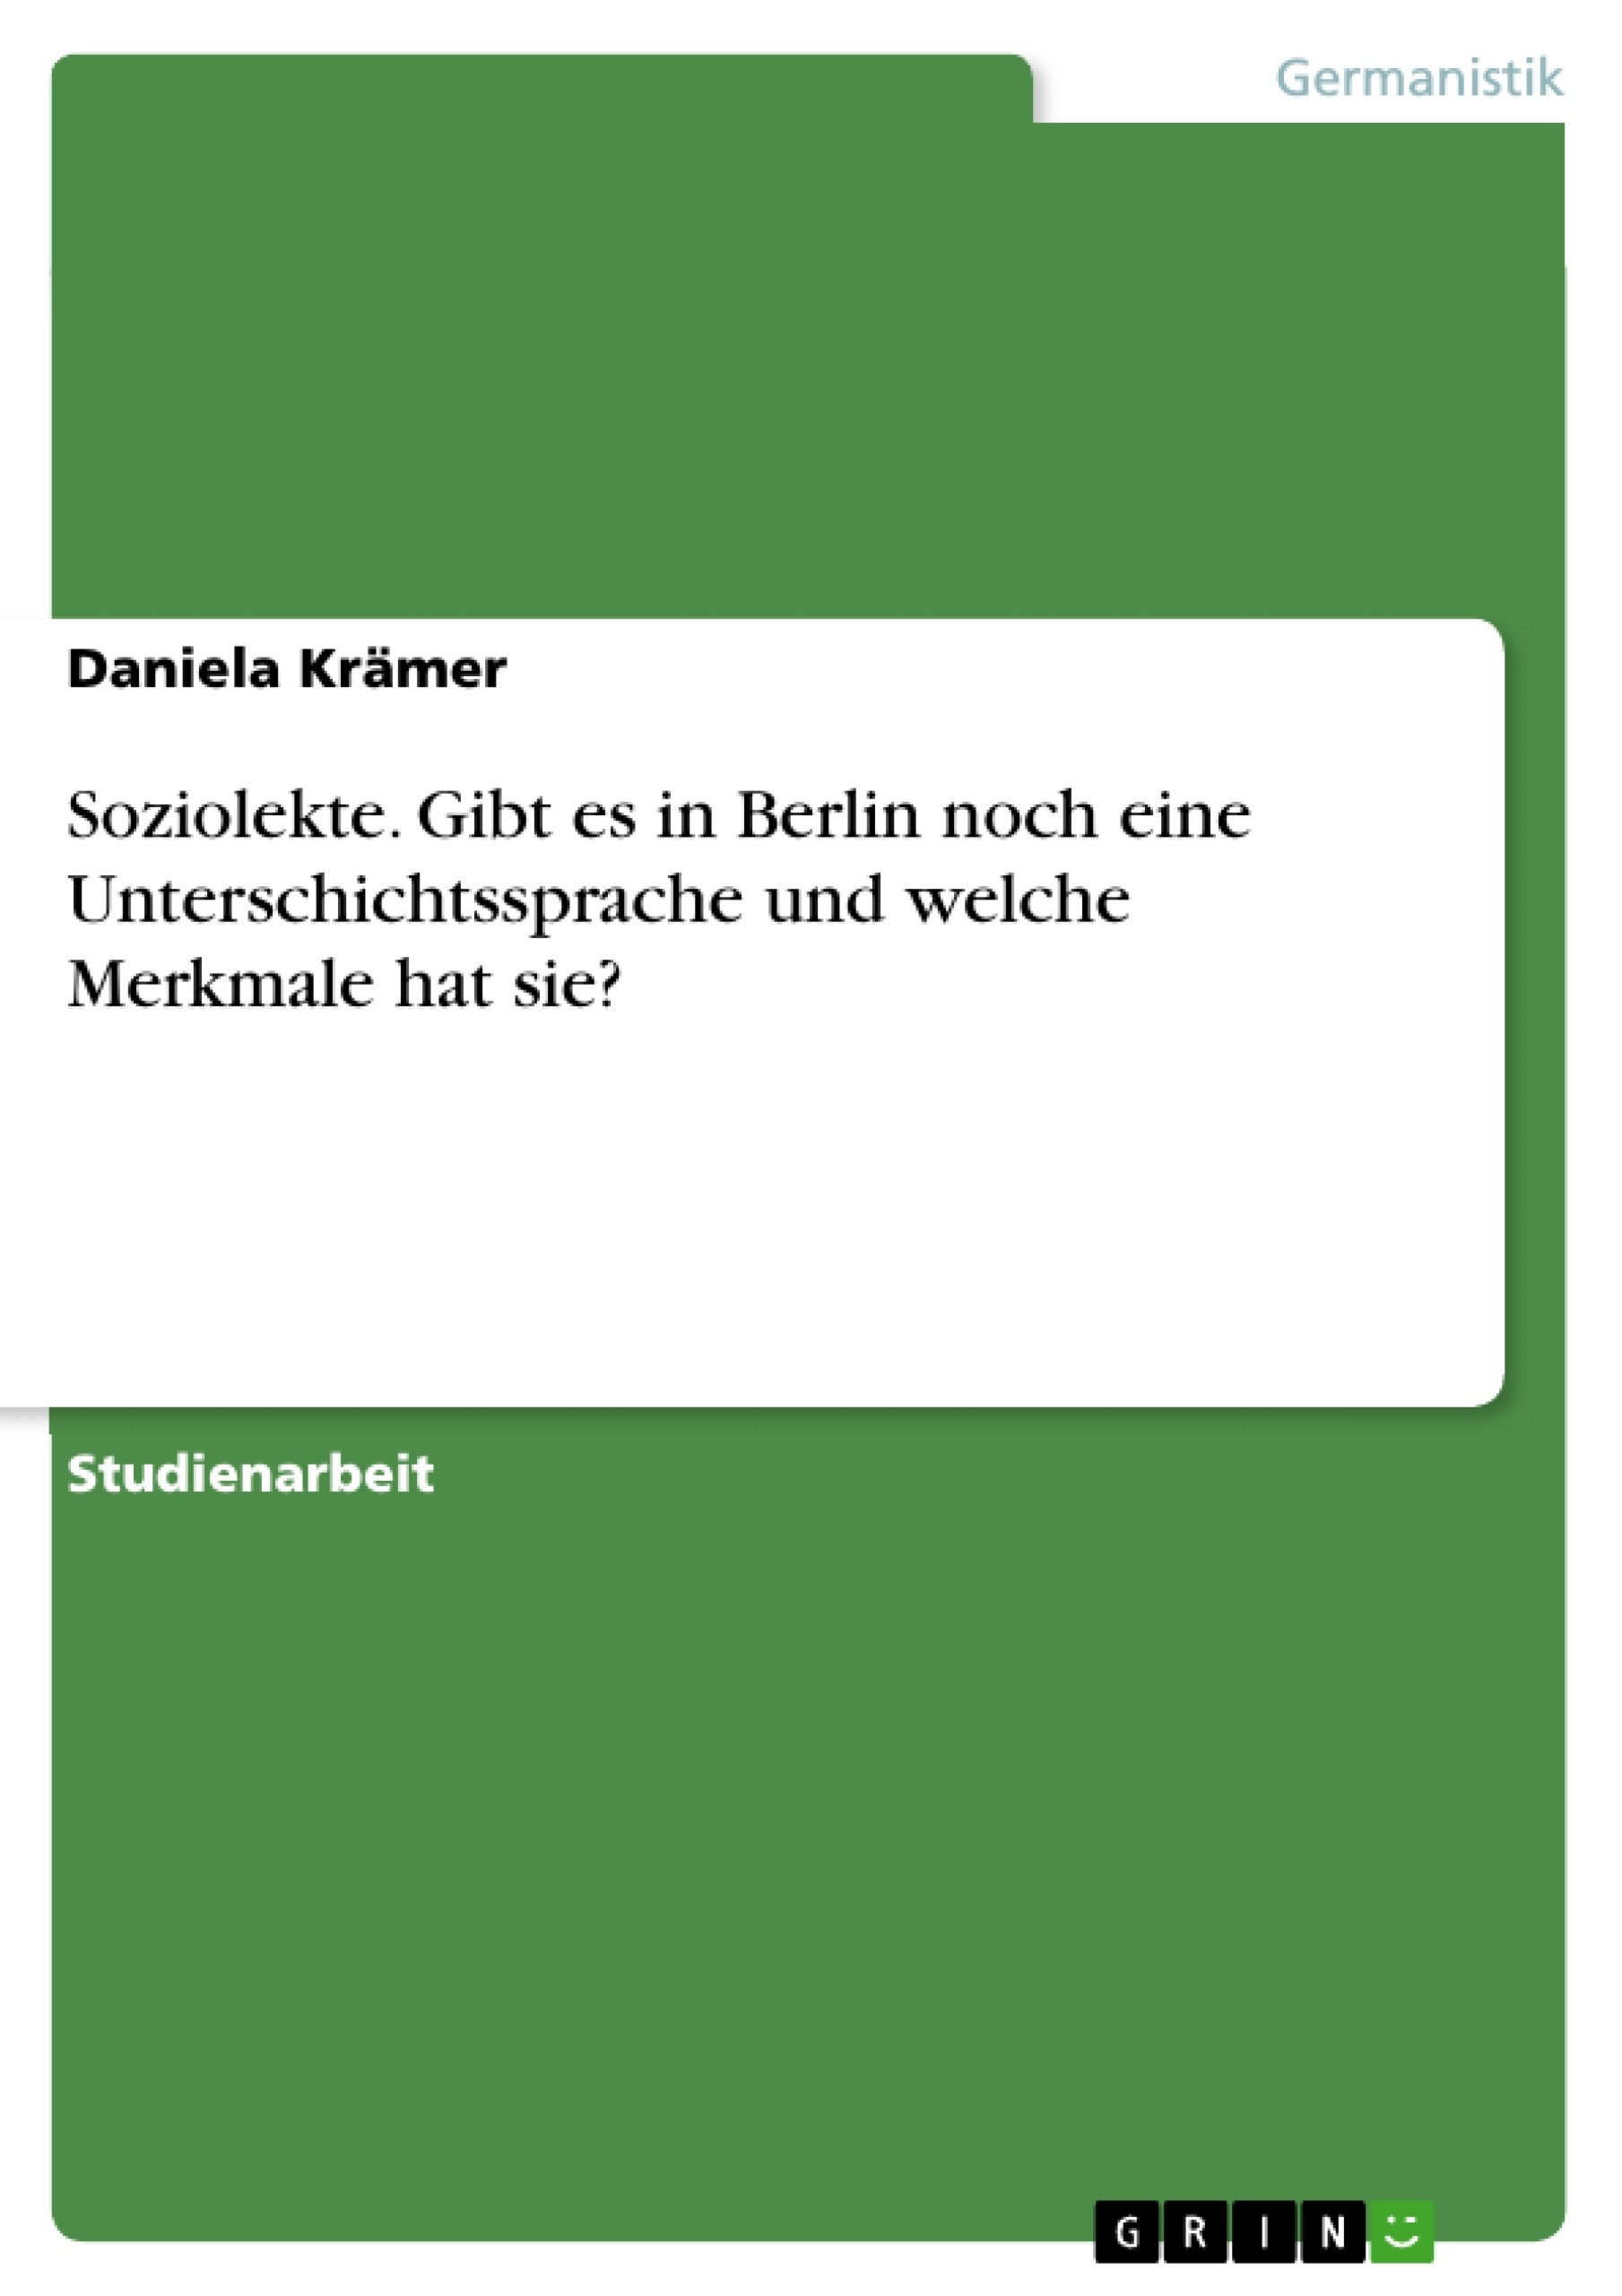 Title: Soziolekte. Gibt es in Berlin noch eine Unterschichtssprache und welche Merkmale hat sie?